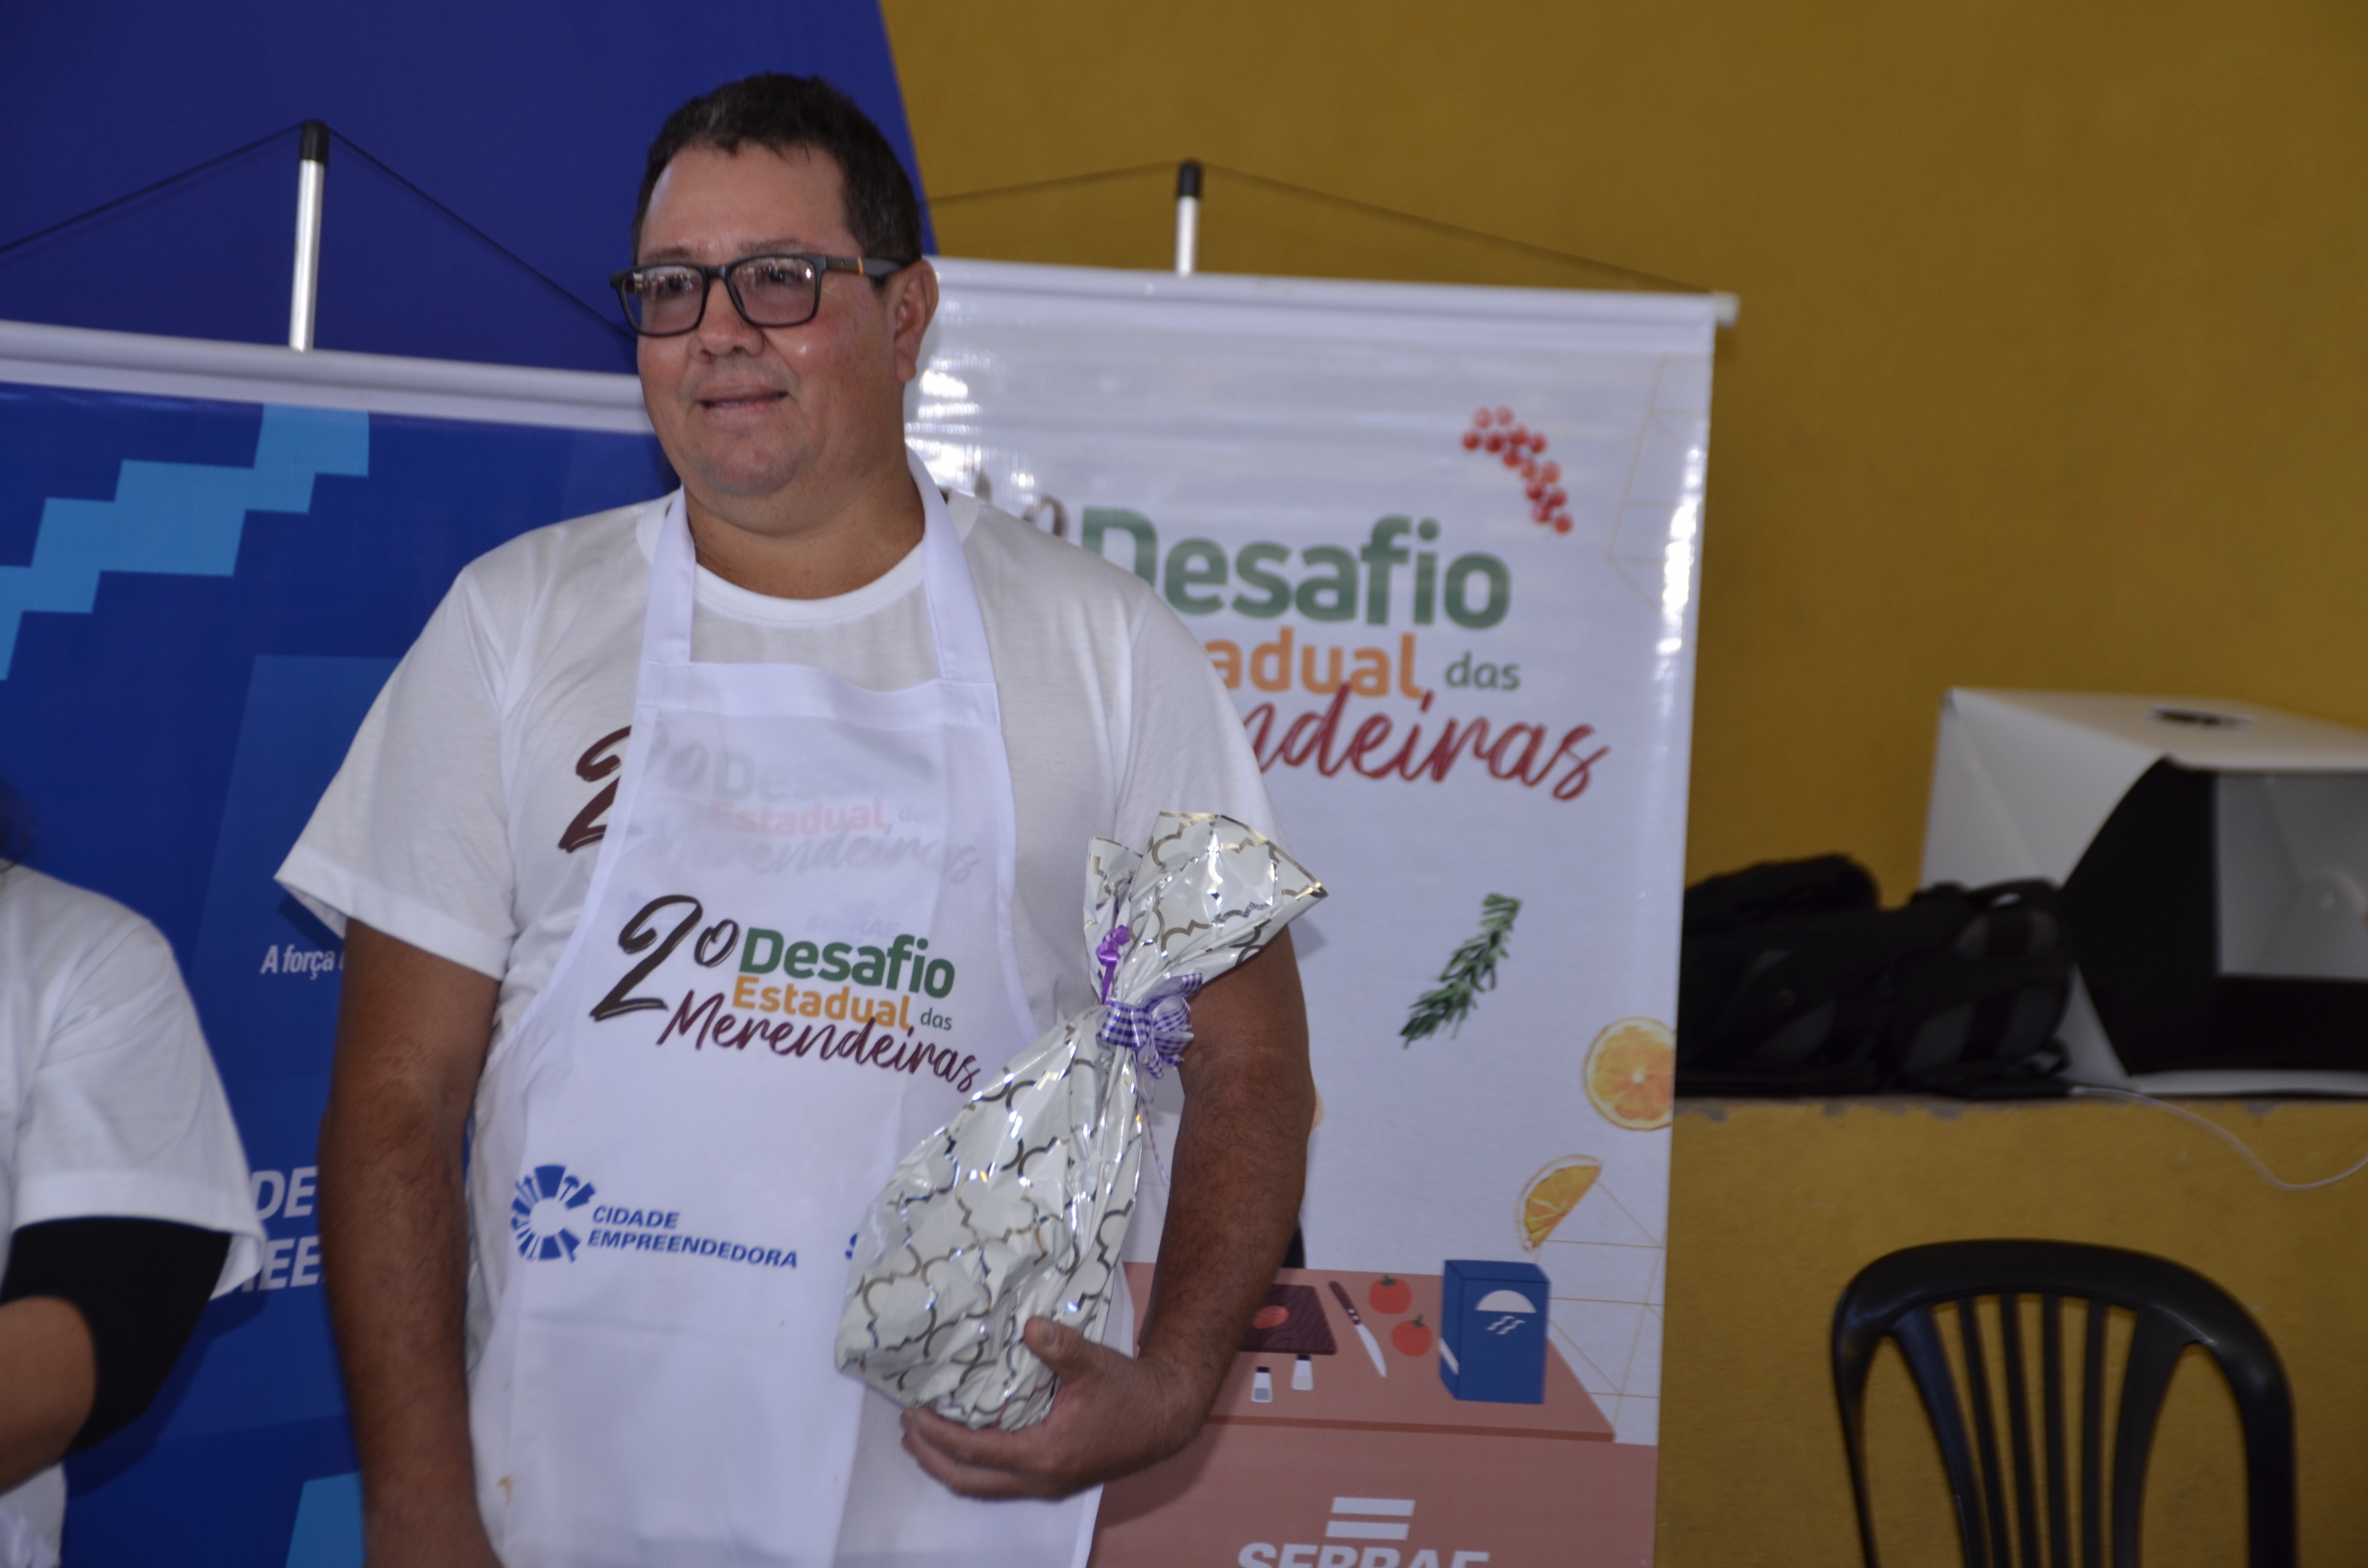 Merendeira da Escola Thomaz Larangeira vence etapa municipal e irá representar Porto Murtinho no 2º 'Desafio Estadual das Merendeiras' na Capital